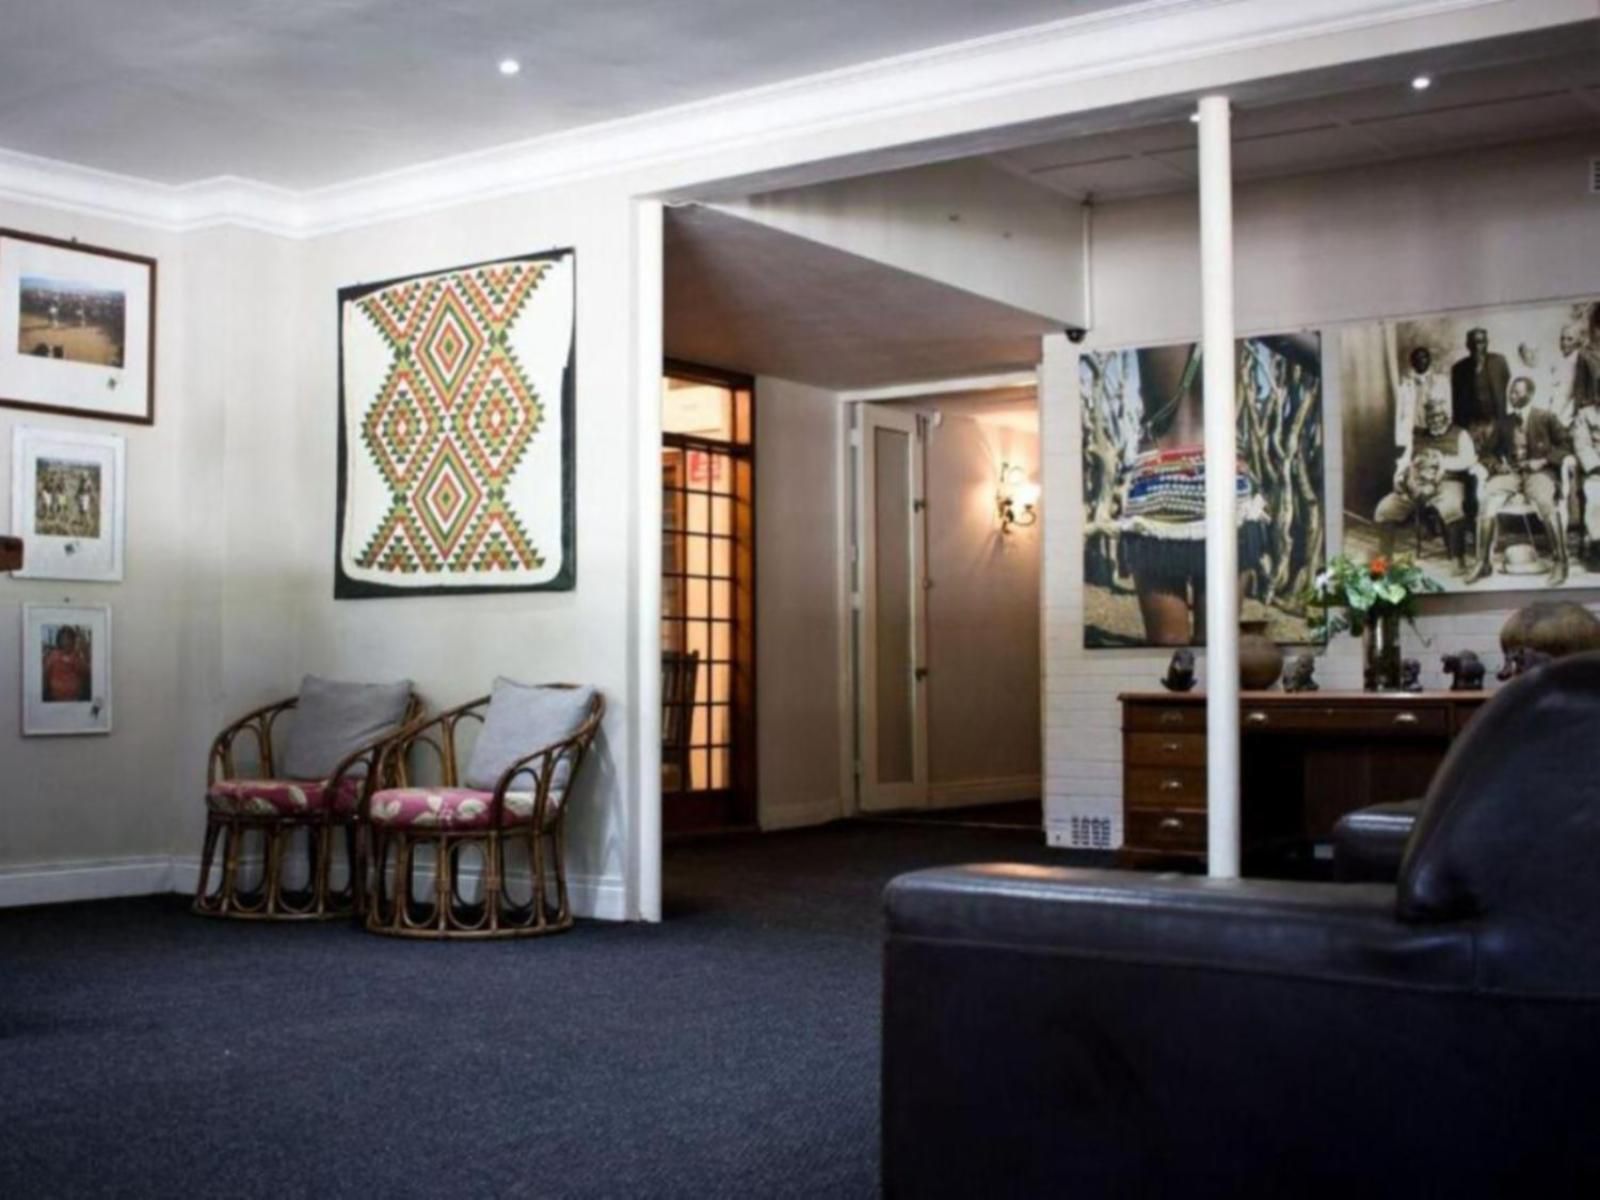 The George Hotel Eshowe Kwazulu Natal South Africa 